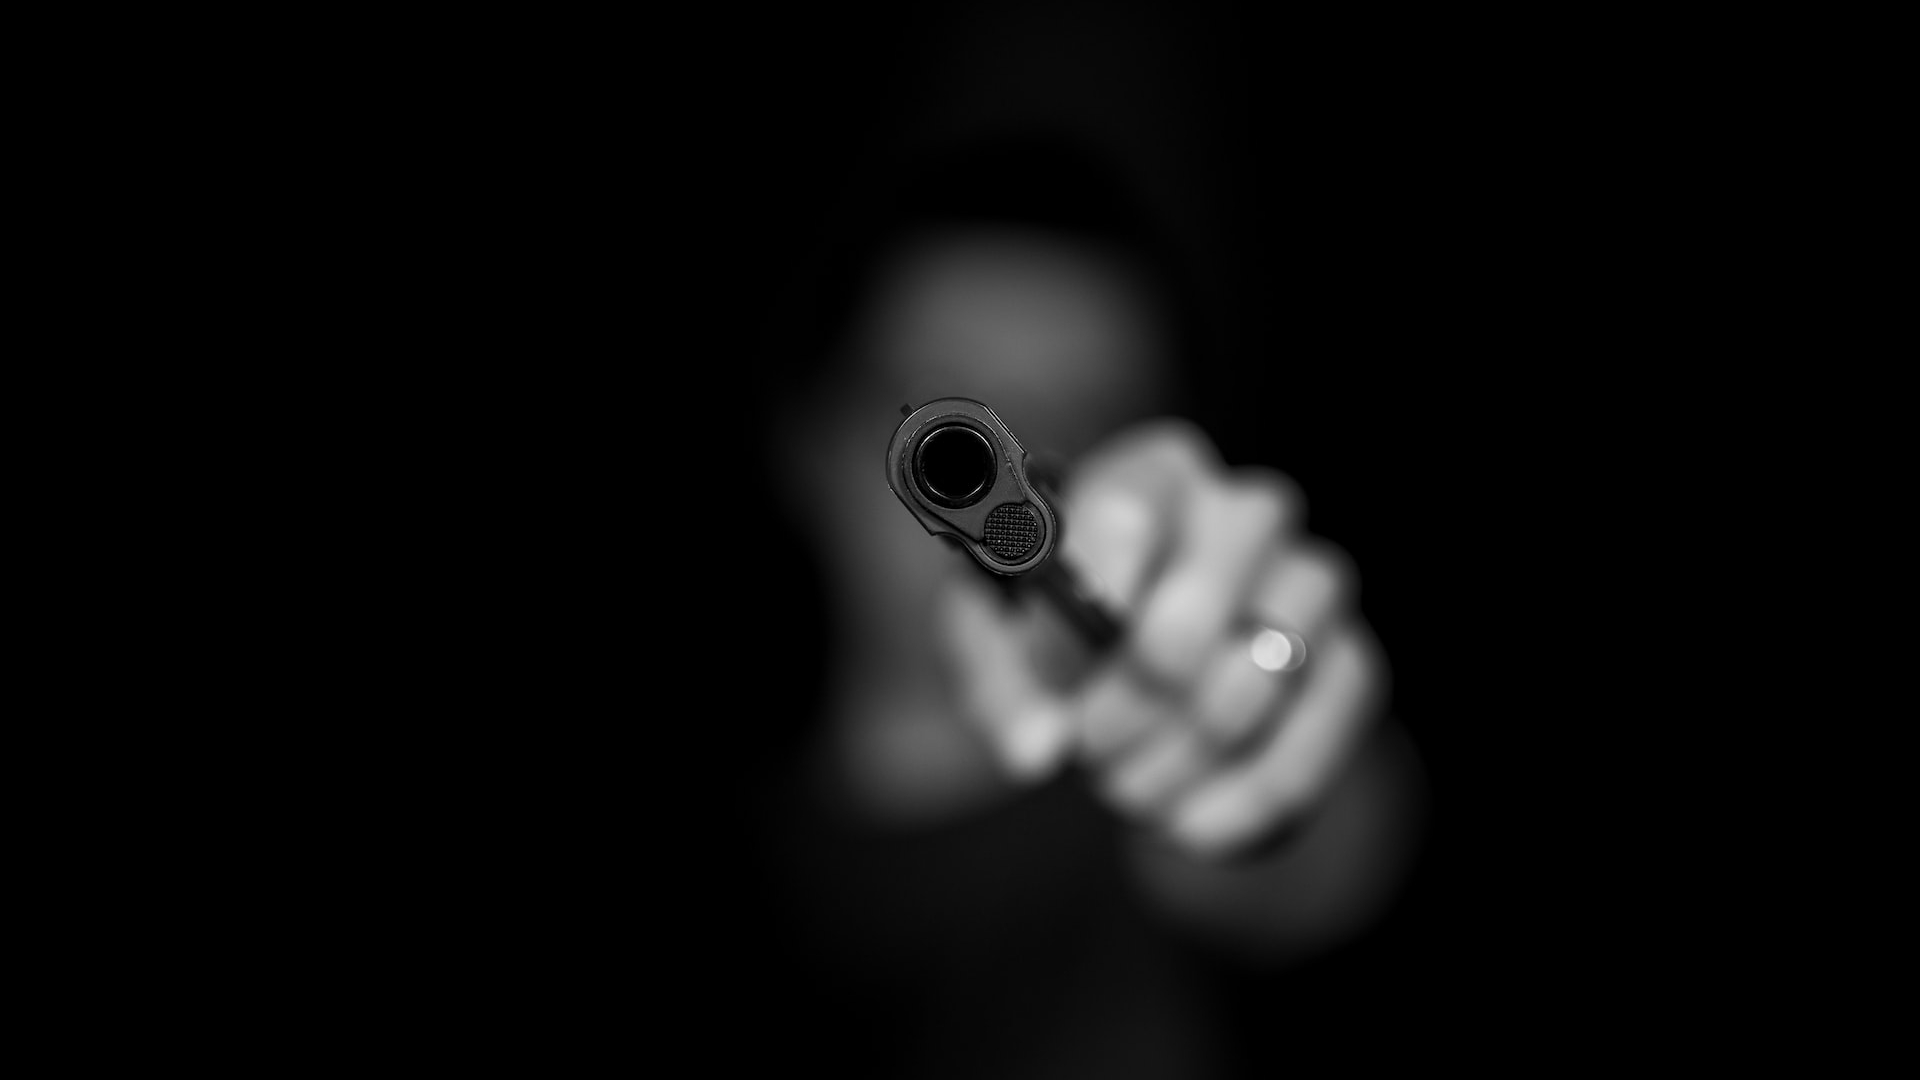 Горячие ставки: в букмекерской конторе на Богатырском мужчина угрожал мигранту-имениннику пистолетом